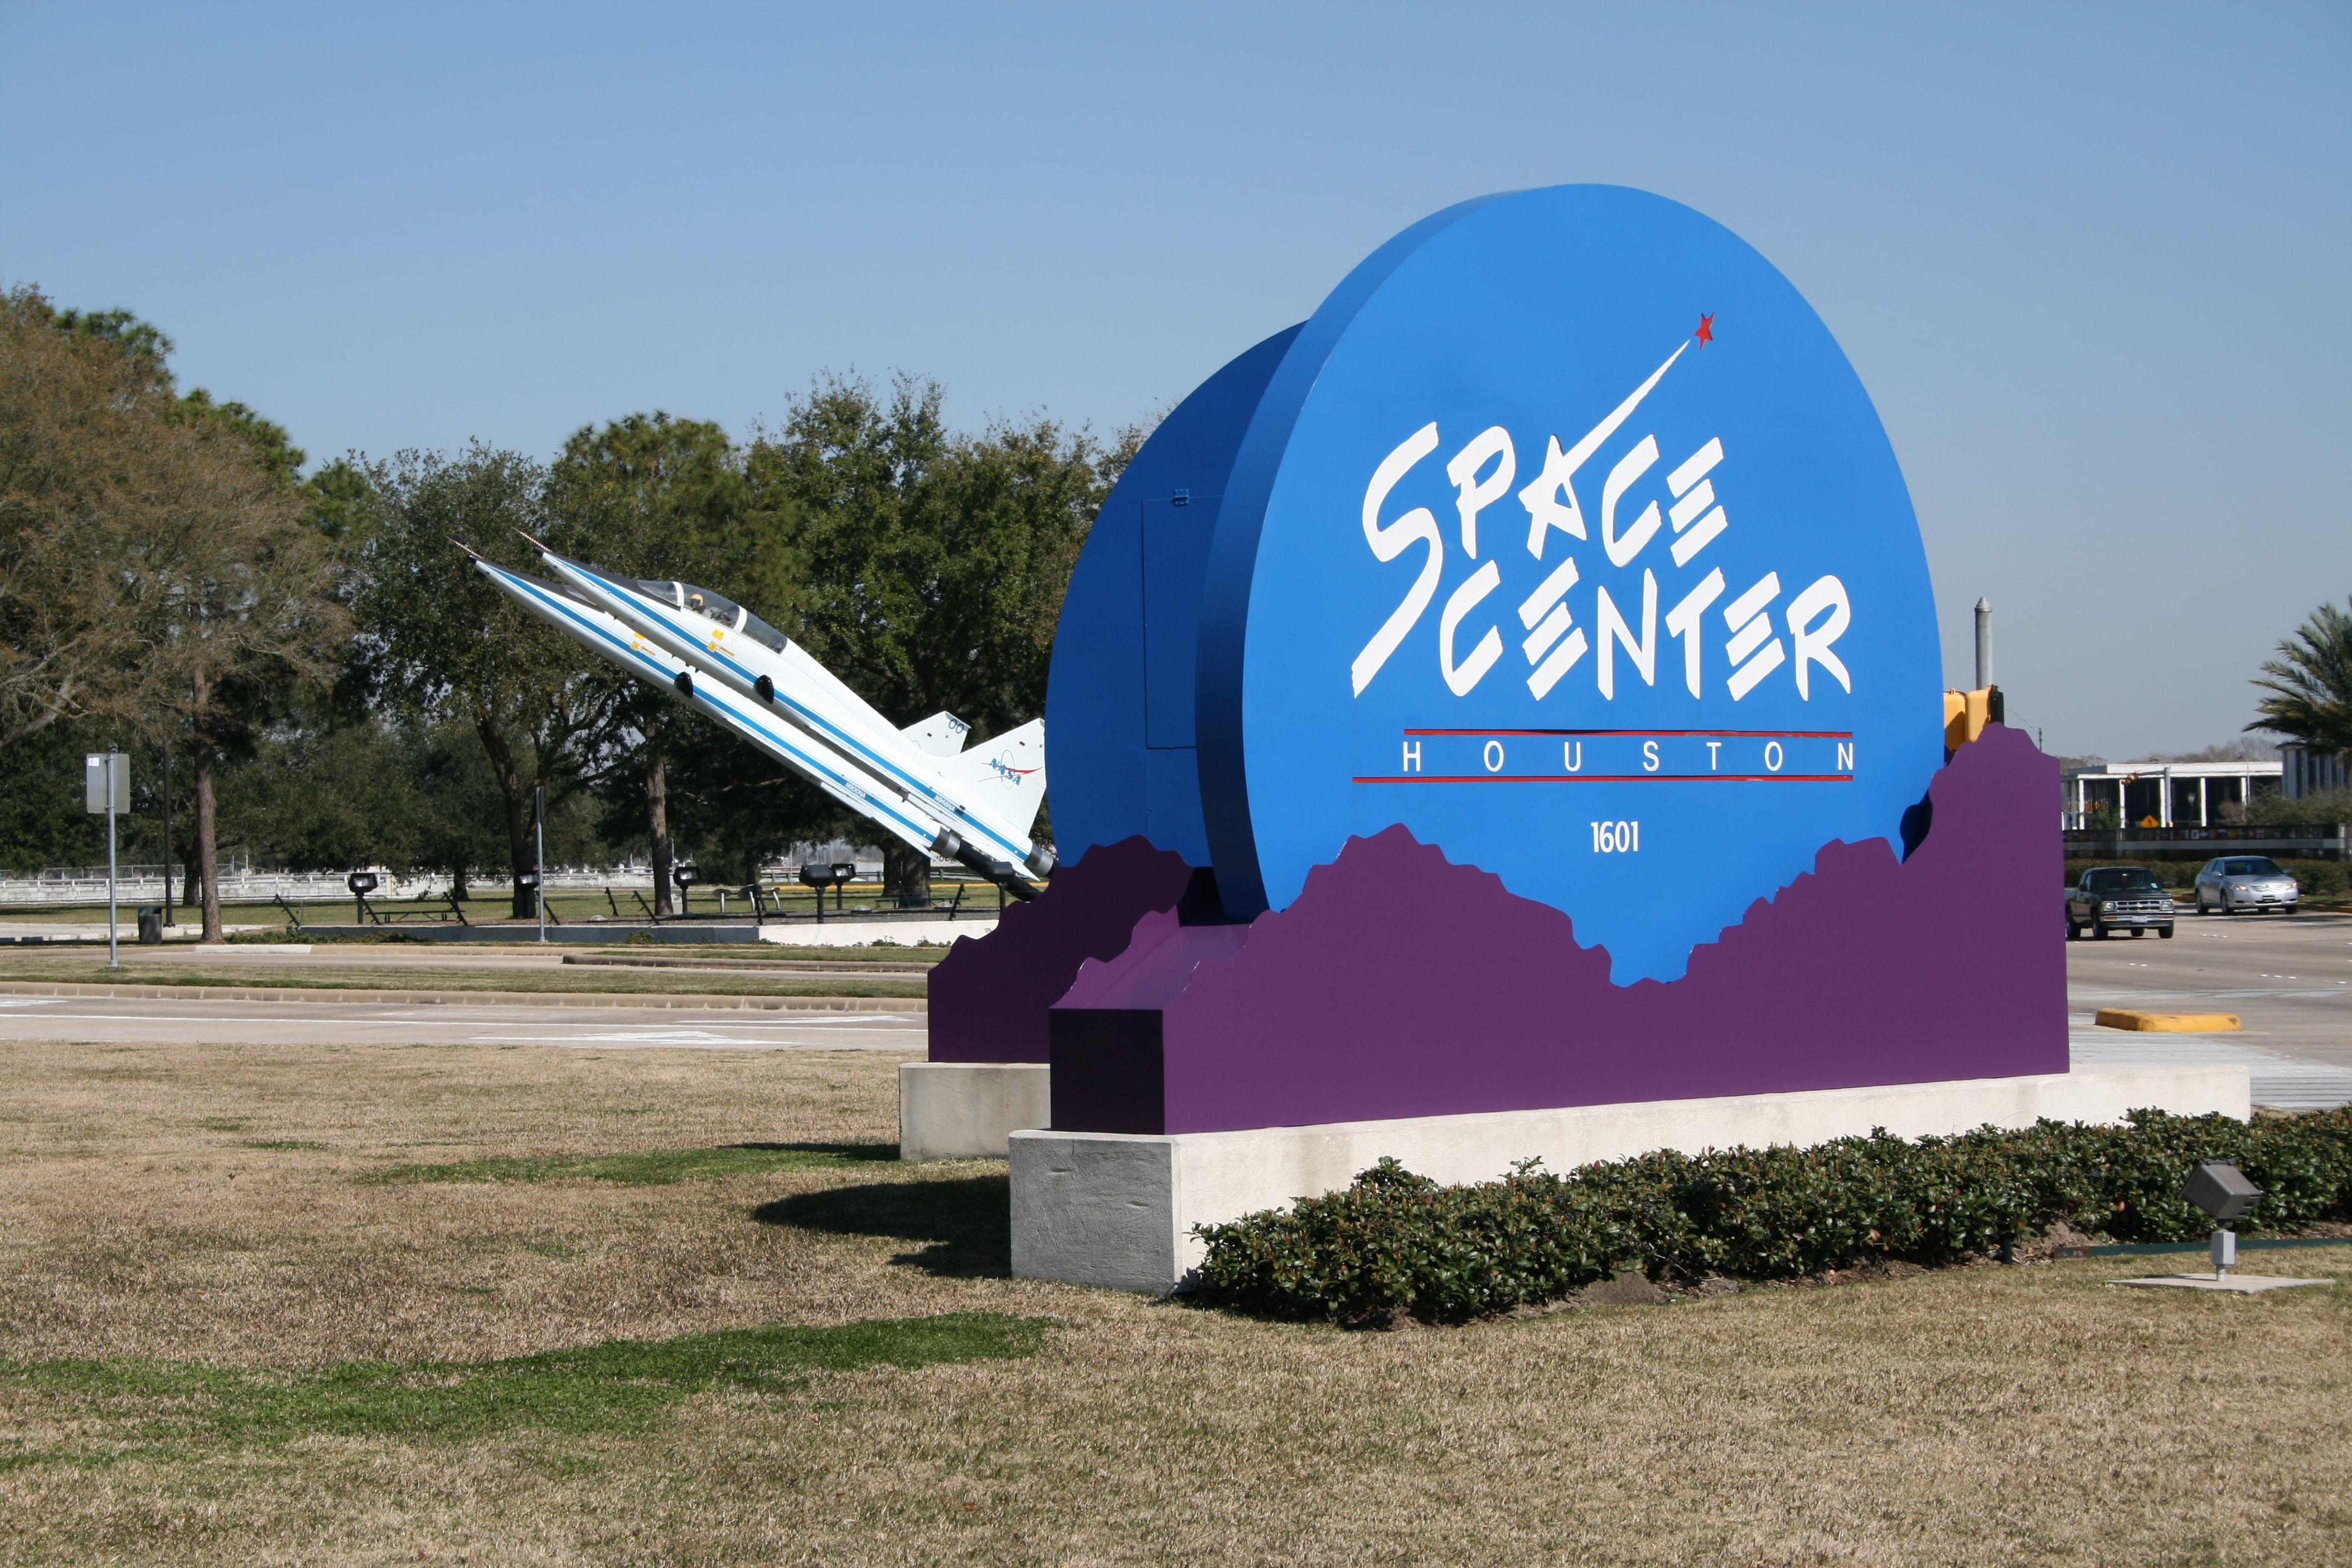 Nasa Space Center Houston Logo